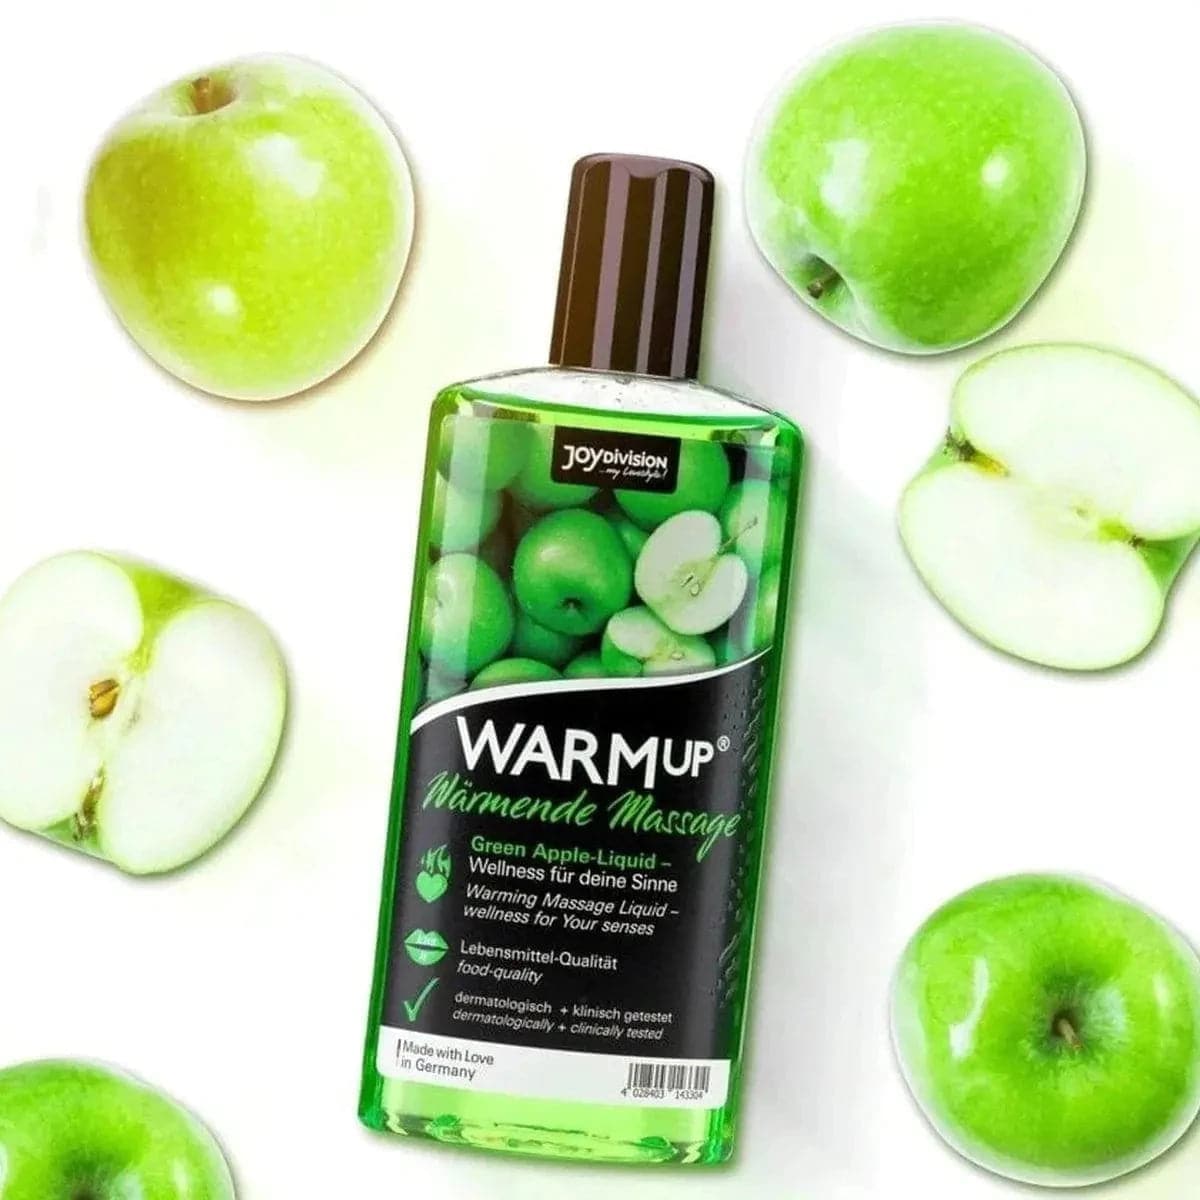 WARMup – Óleo Massagem Comestível Maça Verde 150ml - Aquecimento e Aroma de Fruta